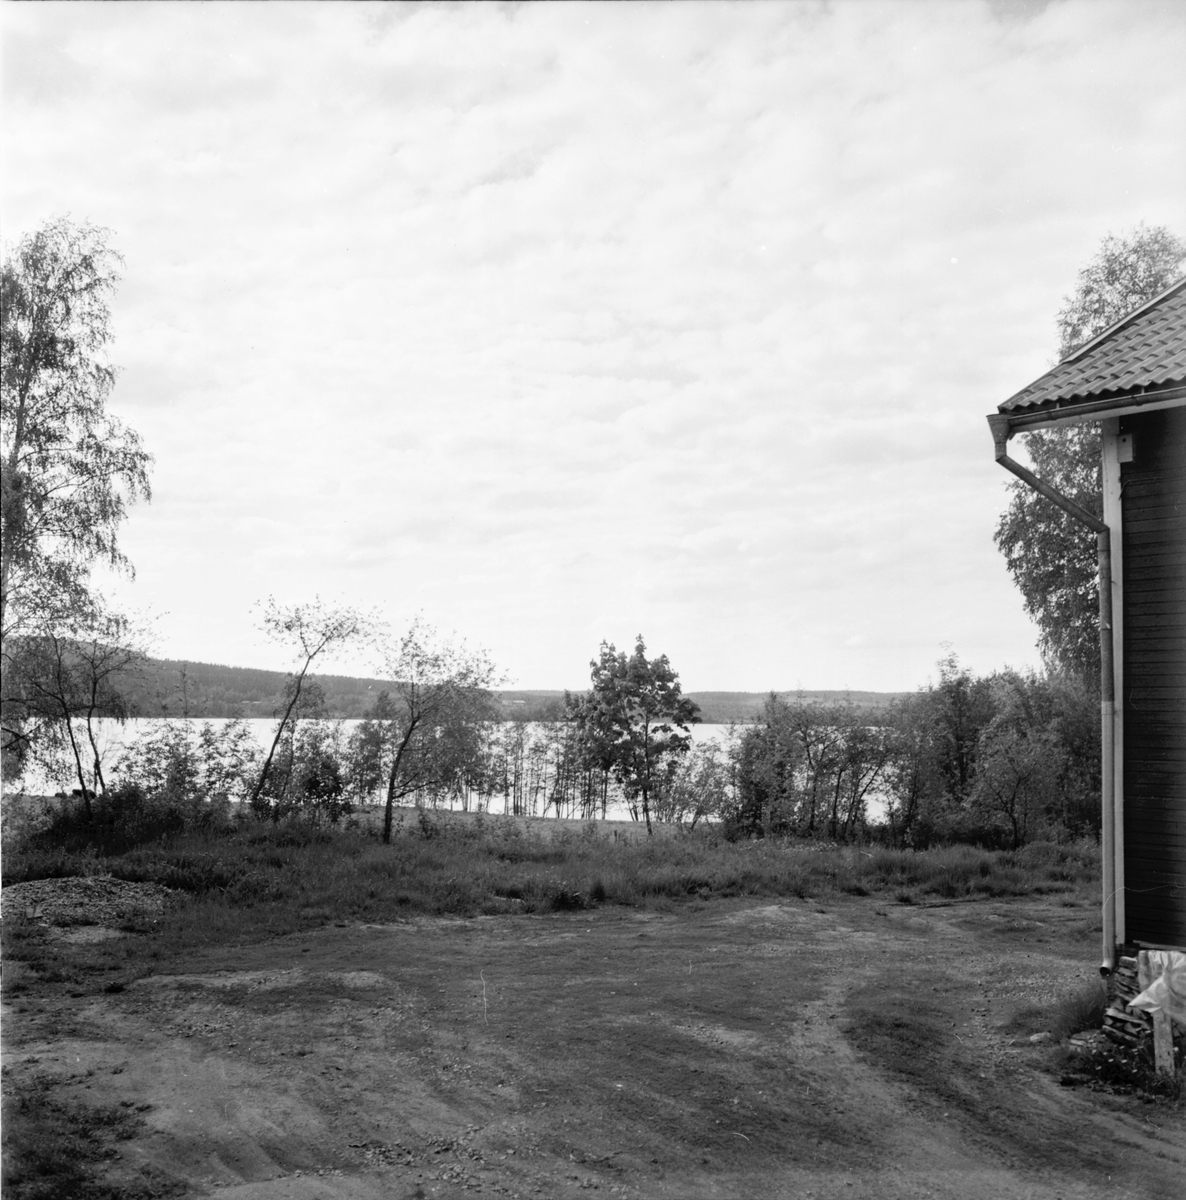 Arbrå,
Hägersta,
1971